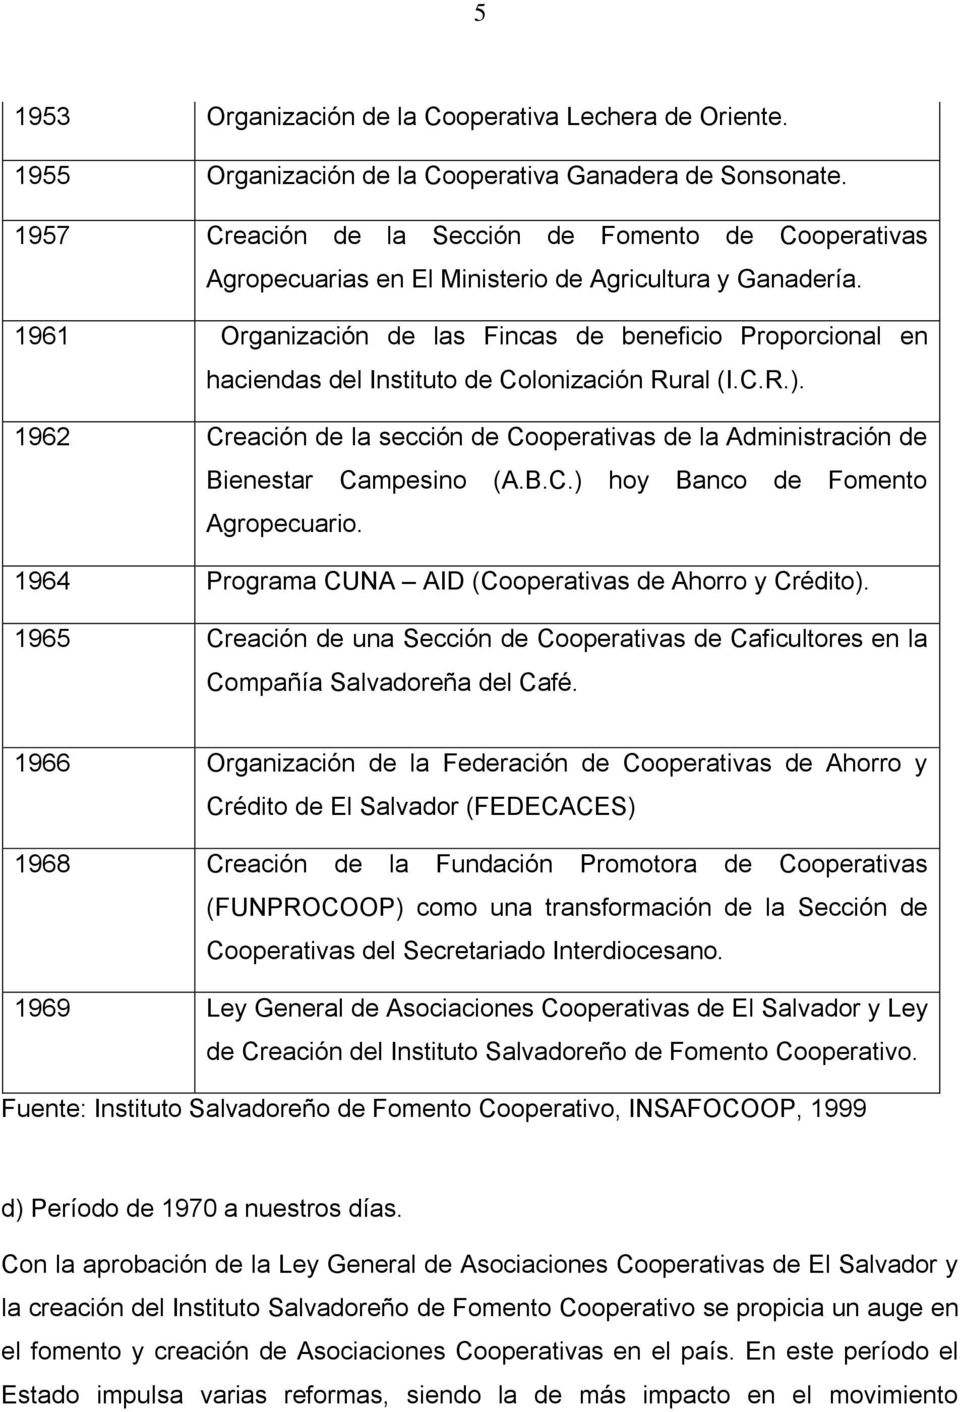 1961 Organización de las Fincas de beneficio Proporcional en haciendas del Instituto de Colonización Rural (I.C.R.).